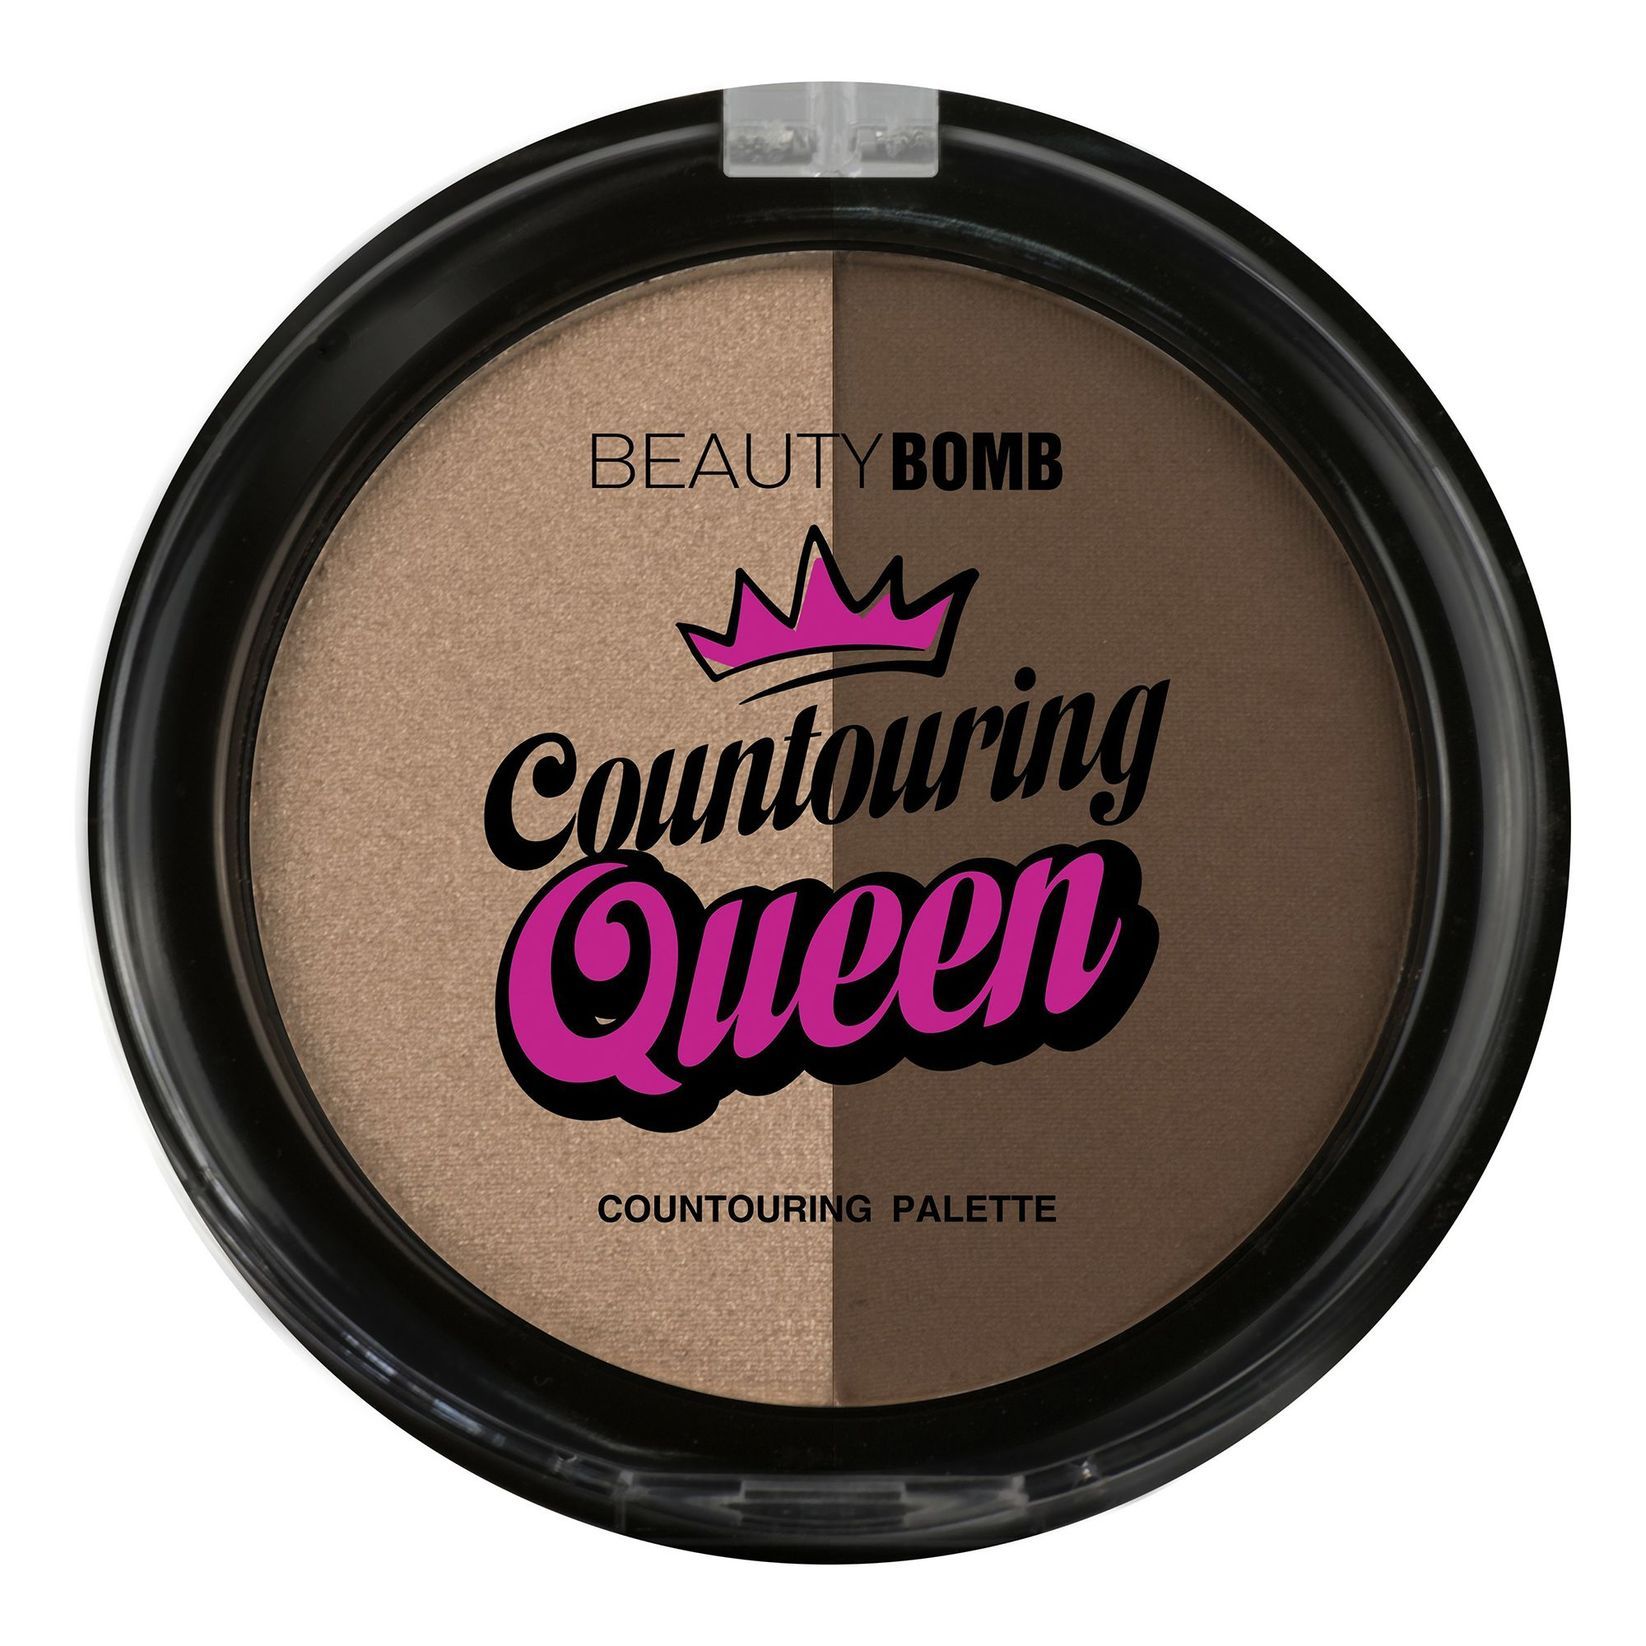 Beauty Bomb Countouring Queen тон 01